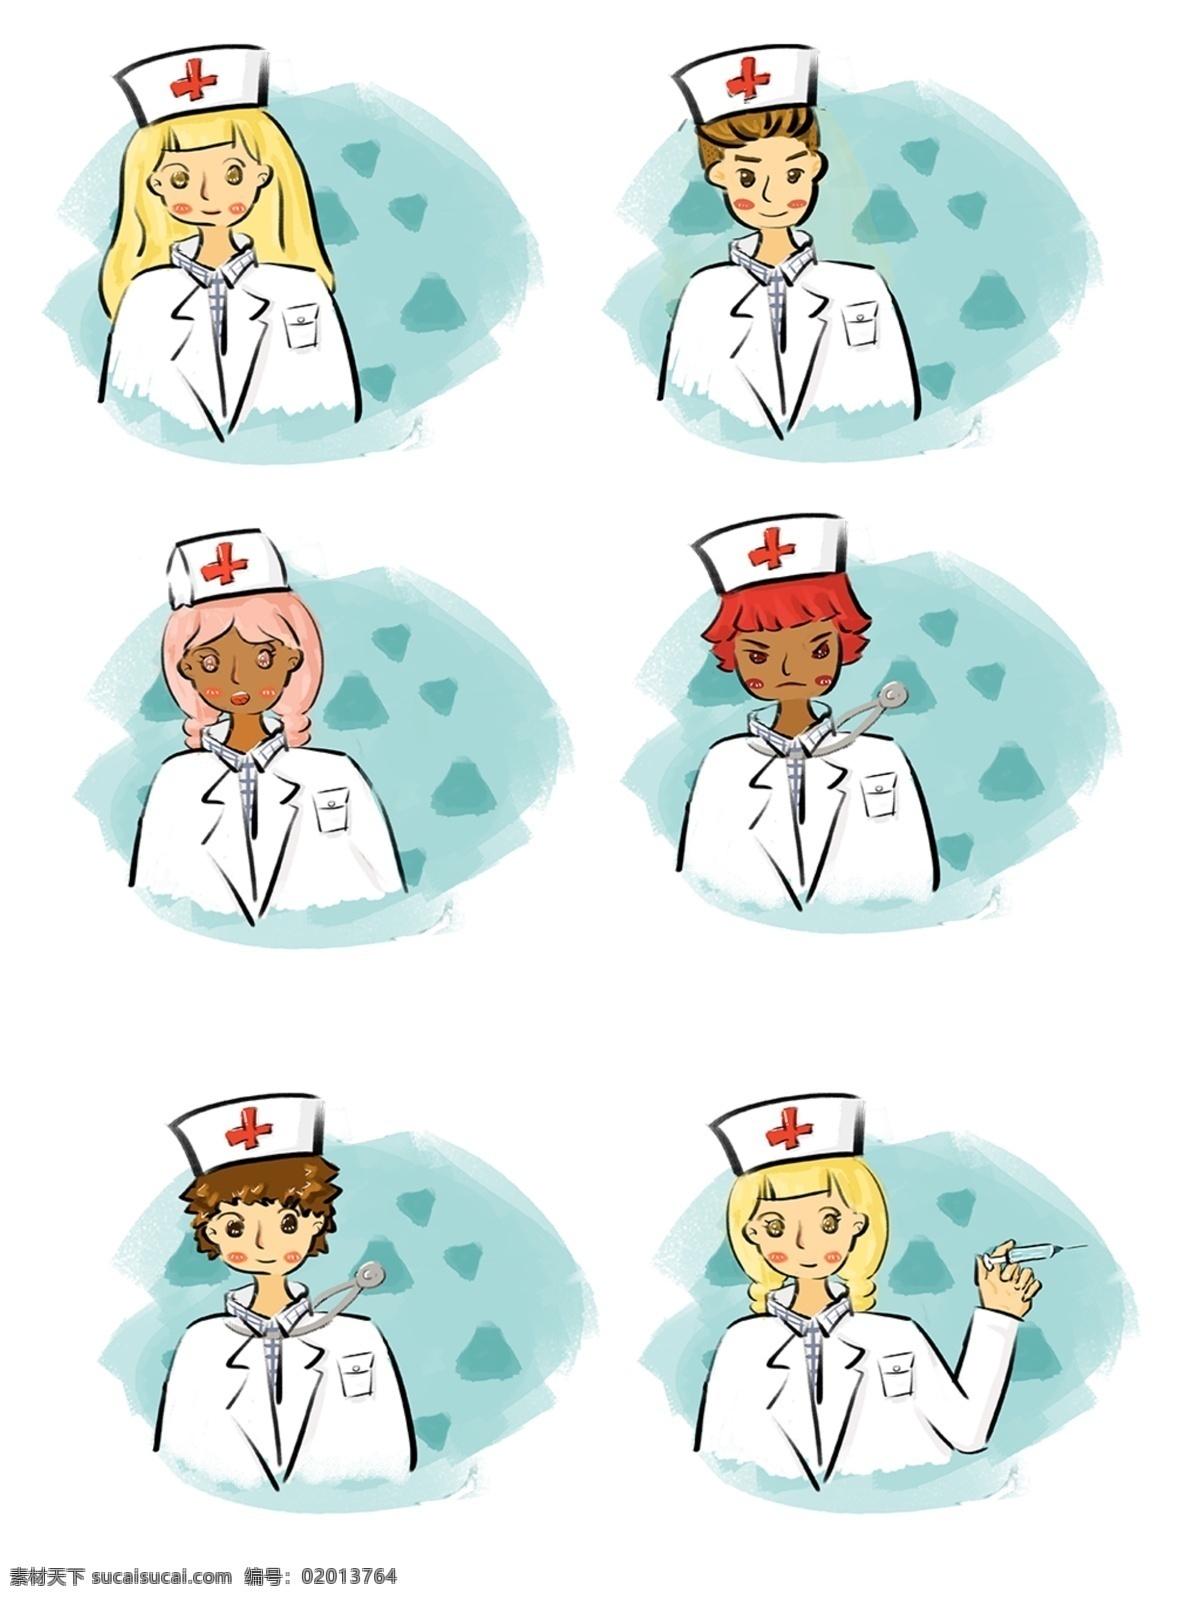 医生 护士 套 图 欧美 风 手绘 可爱 卡通 商用 元素 欧美风 套图 可商用元素